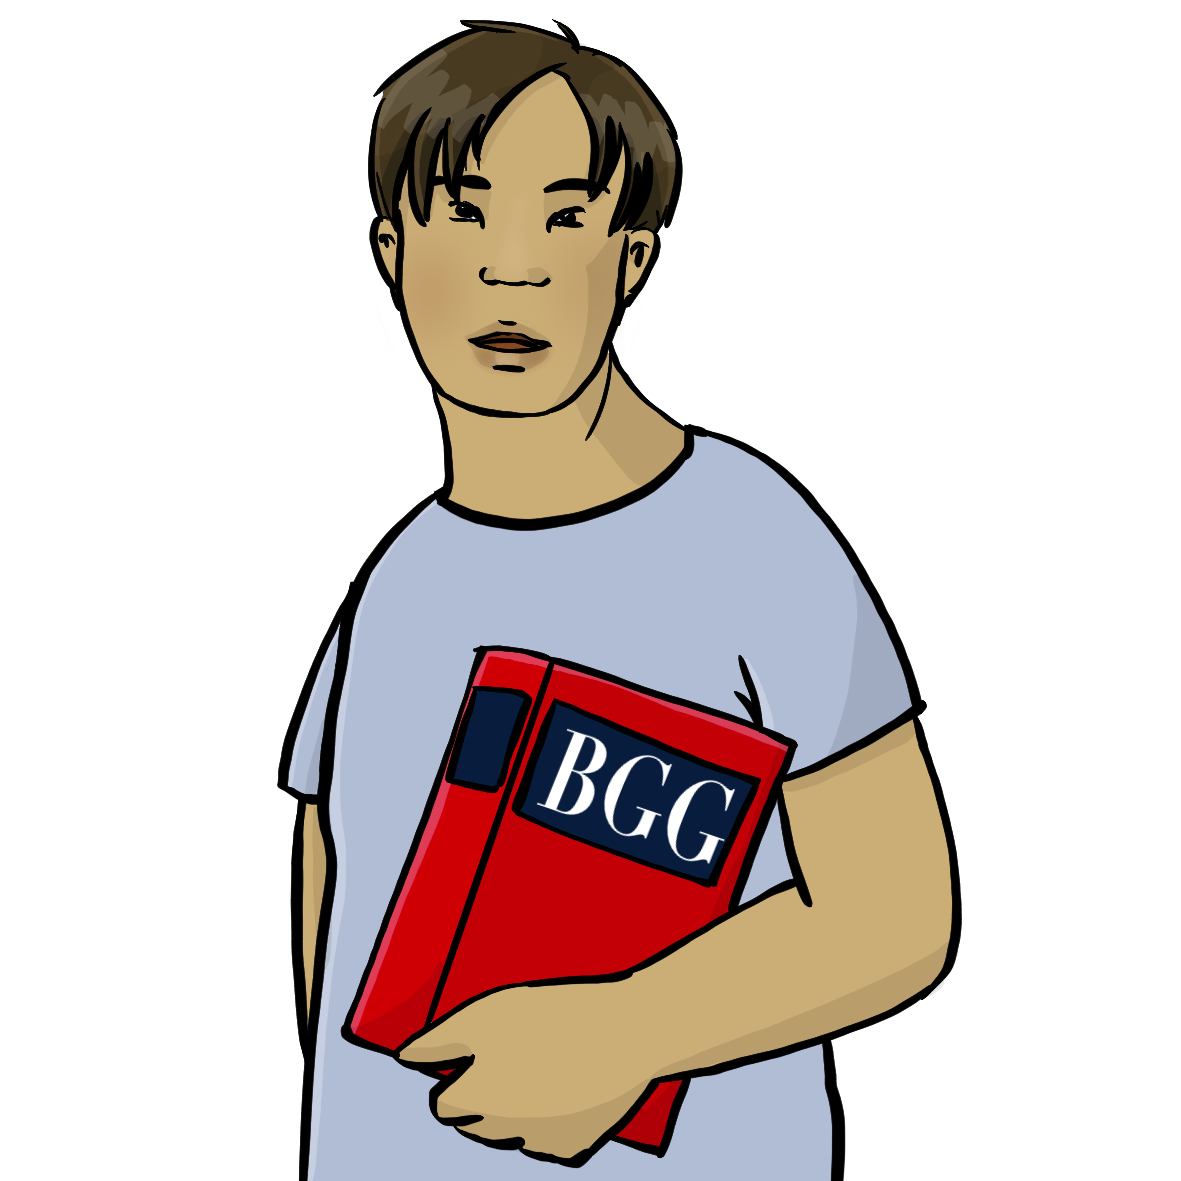 Ein Mann mit Downsyndrom hält ein rotes dickes Buch unter dem Arm. Auf dem Buch steht BGG.